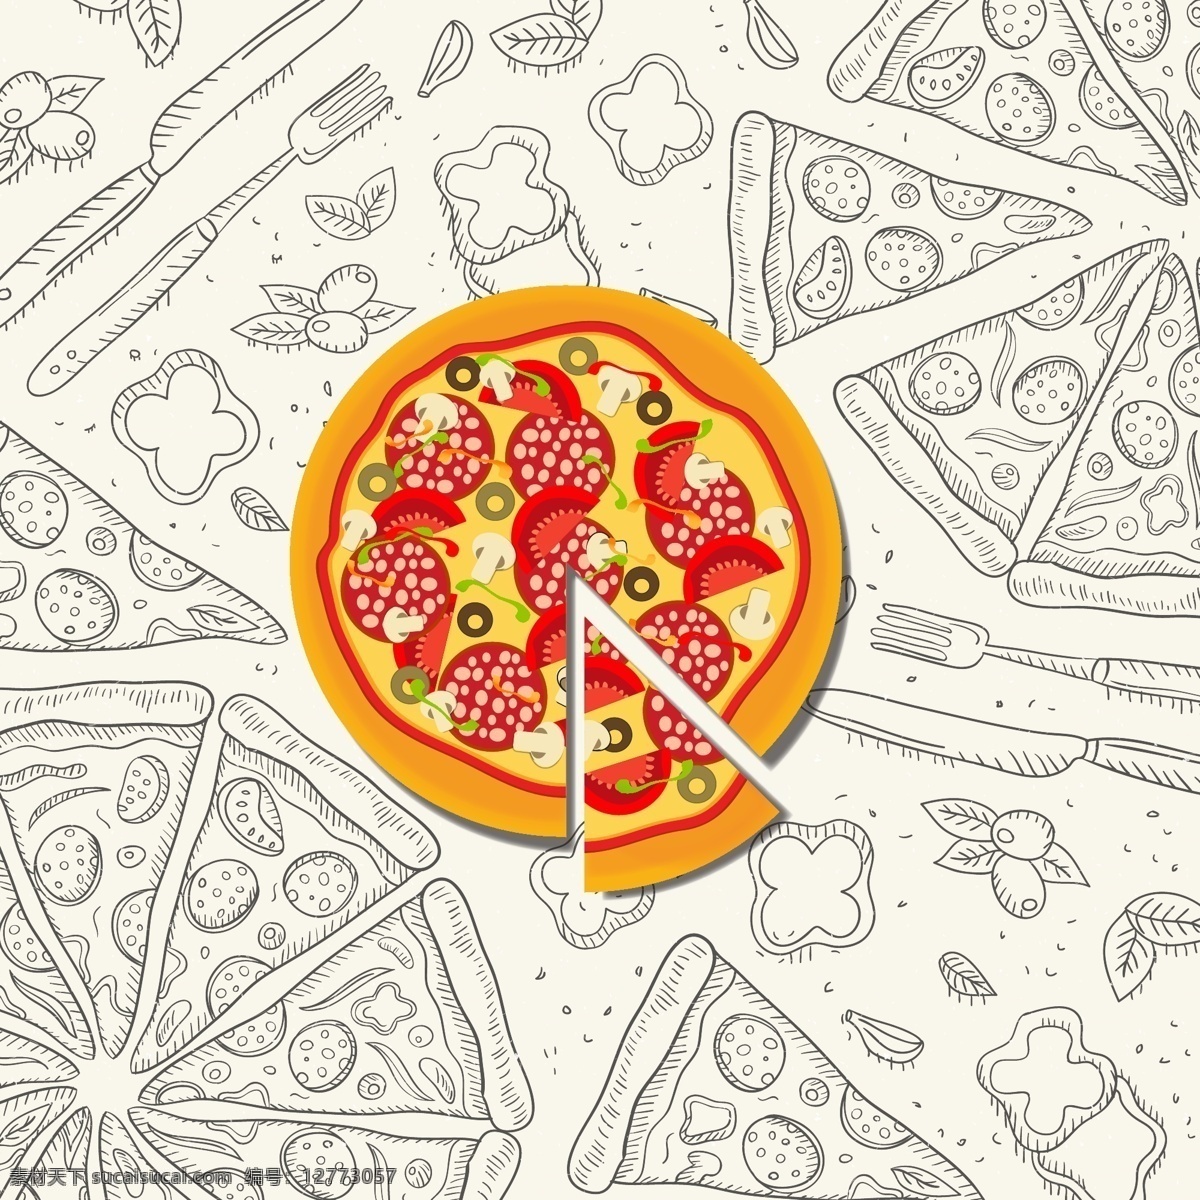 矢量披萨 pizza 披萨 比萨 欧洲披萨 意大利披萨 外卖 外卖海报 送外卖 美味 中国披萨 披萨做法 美味披萨 美食 小吃 披萨海报 披萨展板 披萨文化 披萨促销 披萨西餐 披萨快餐 披萨加盟 披萨店 披萨必胜店 比萨披萨 披萨包装 披萨美食 西式披萨 披萨厨师 披萨插画 矢量 生活百科 餐饮美食